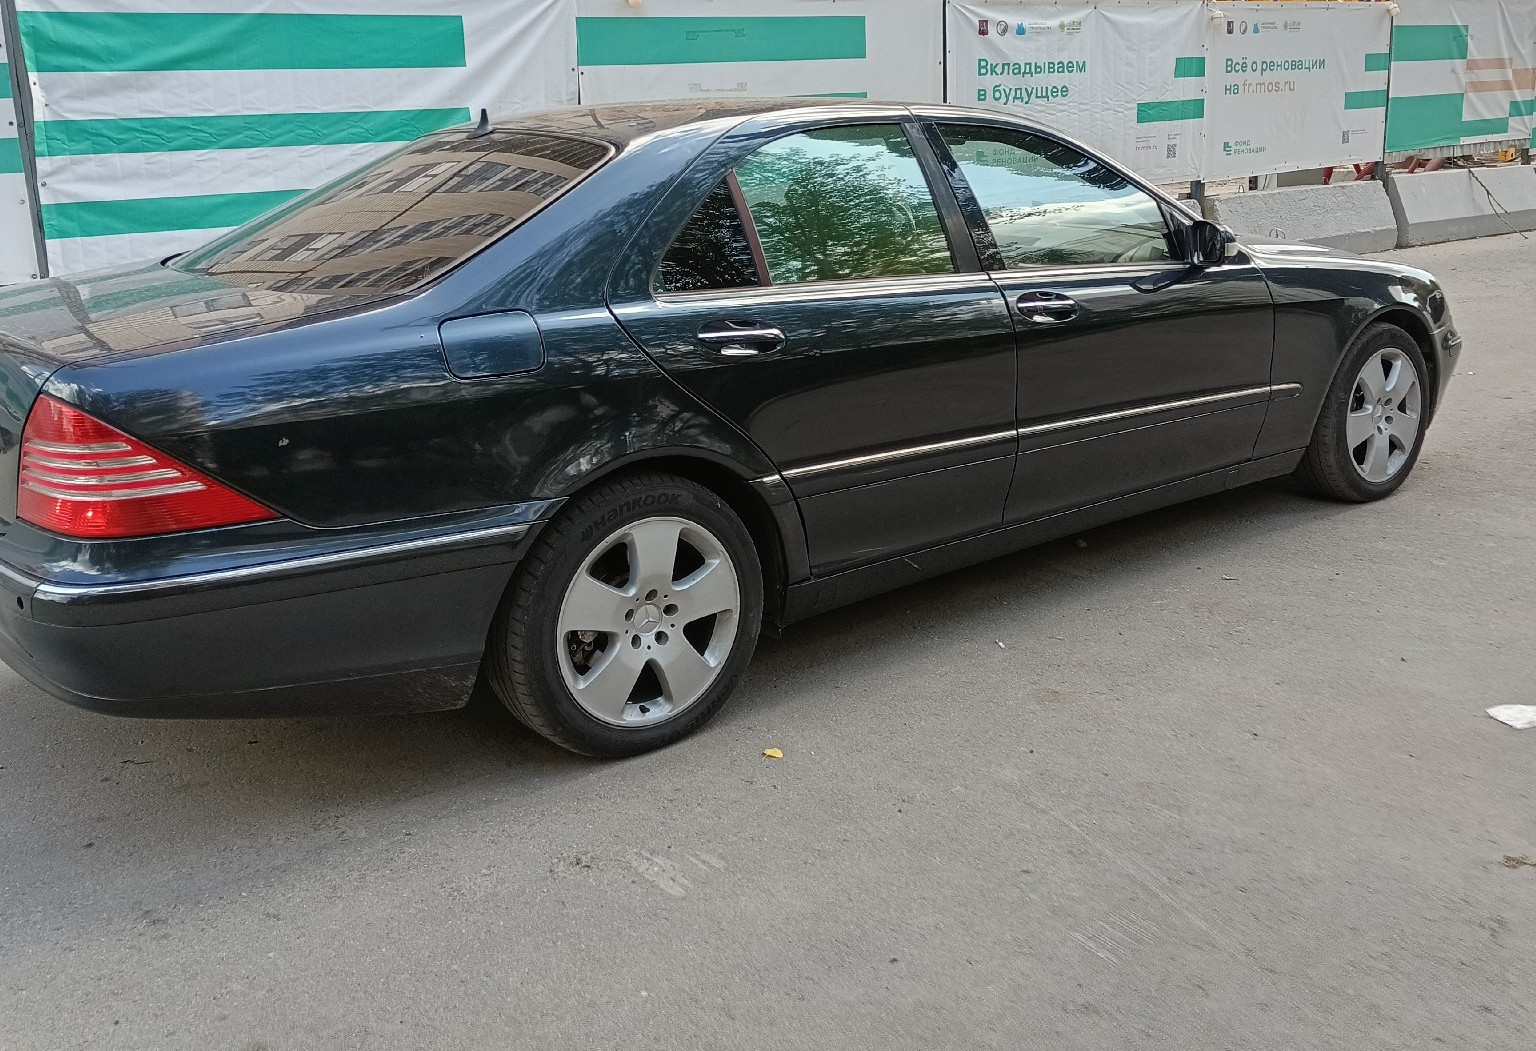 Аренда mercedes-benz s-klass стандарт класса 2002 года в городе Москва Люблино от 3300 руб./сутки, задний привод, двигатель: бензин, объем 3.2 литра, ОСАГО (Мультидрайв), без водителя, недорого, вид 4 - RentRide